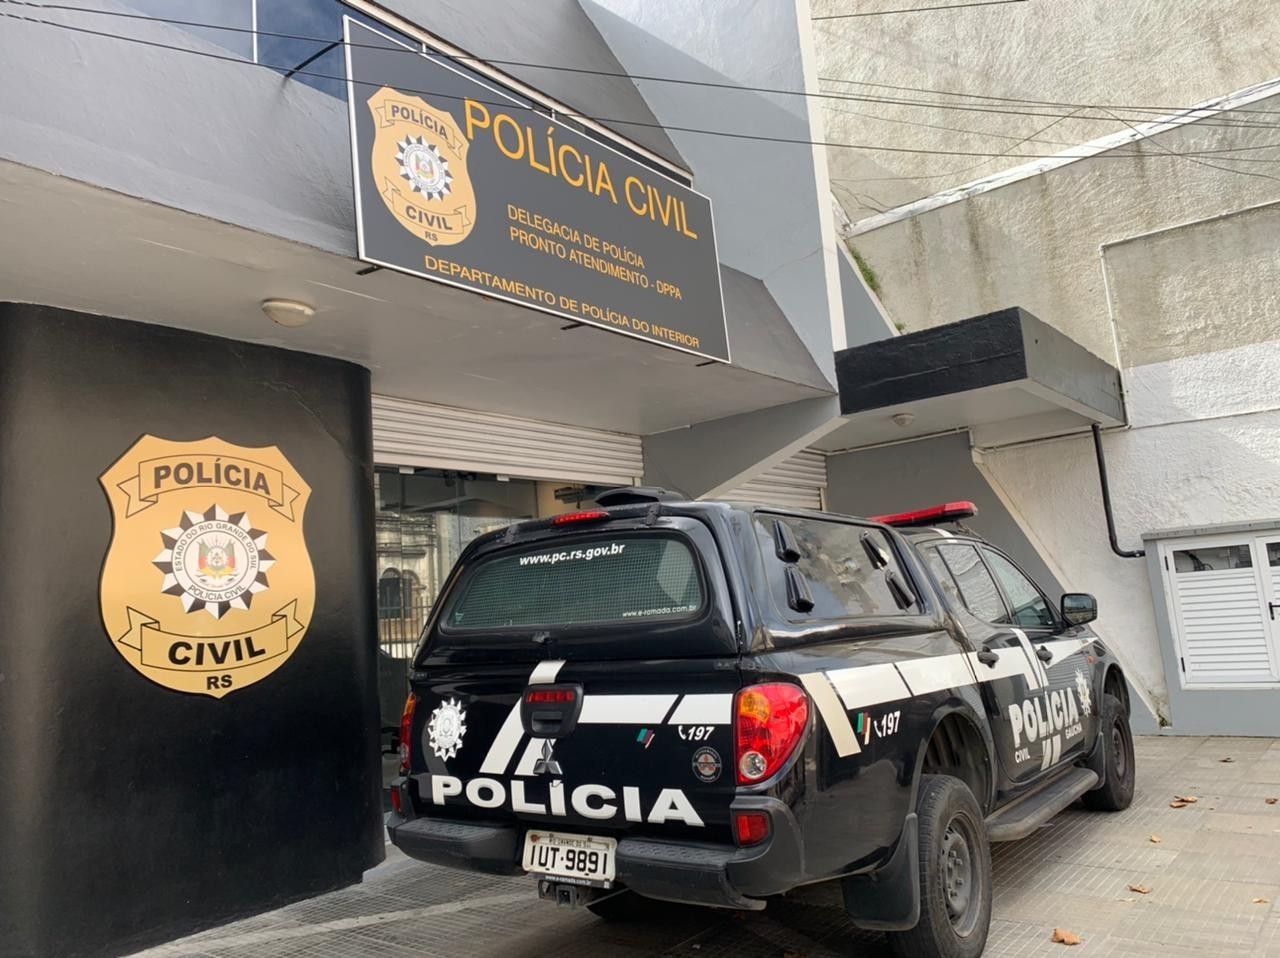 Pronto Atendimento da Polícia Civil está temporariamente no Balneário Cassino 